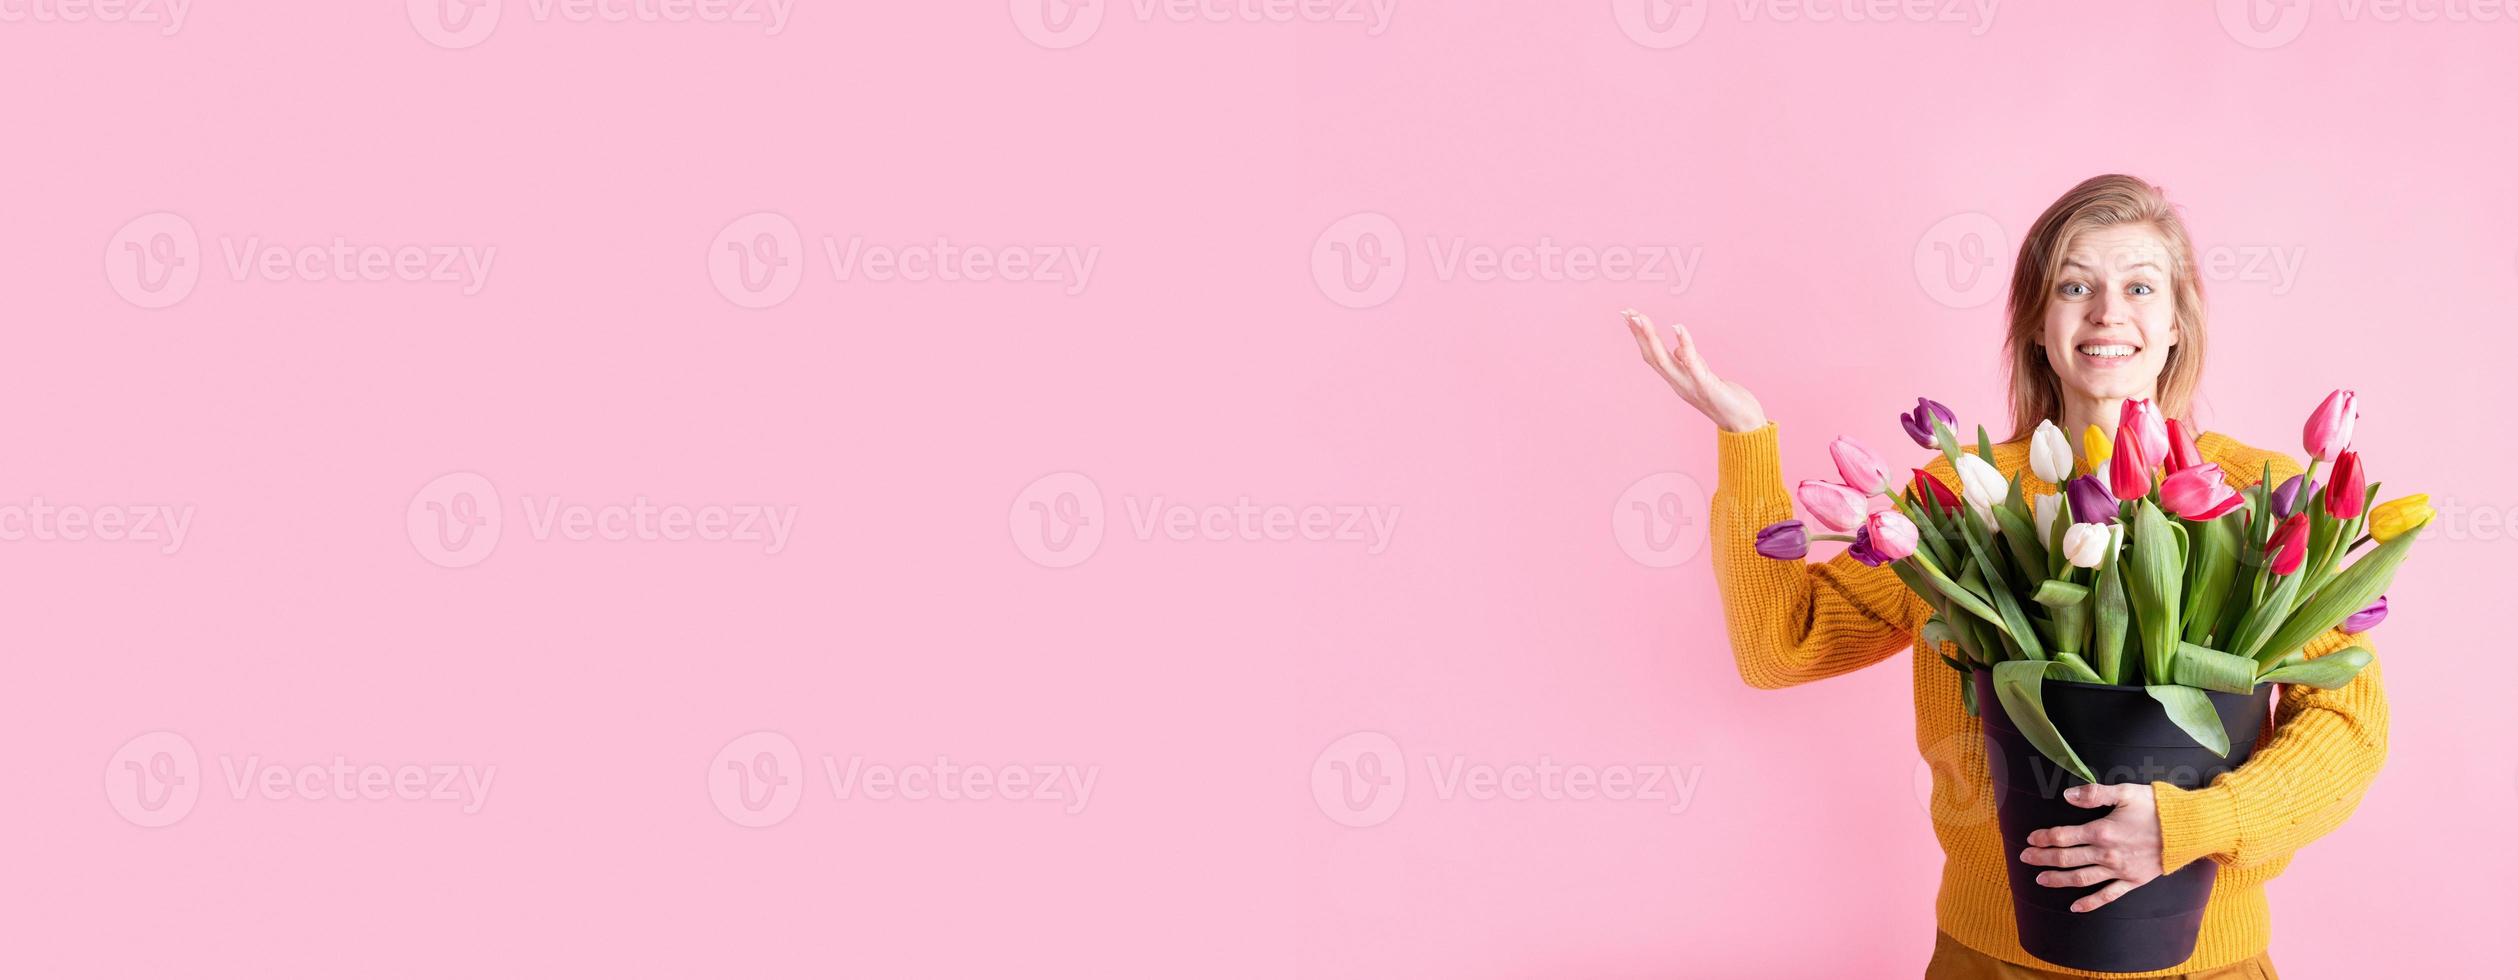 mulher segurando um balde de tulipas frescas isoladas em rosa foto